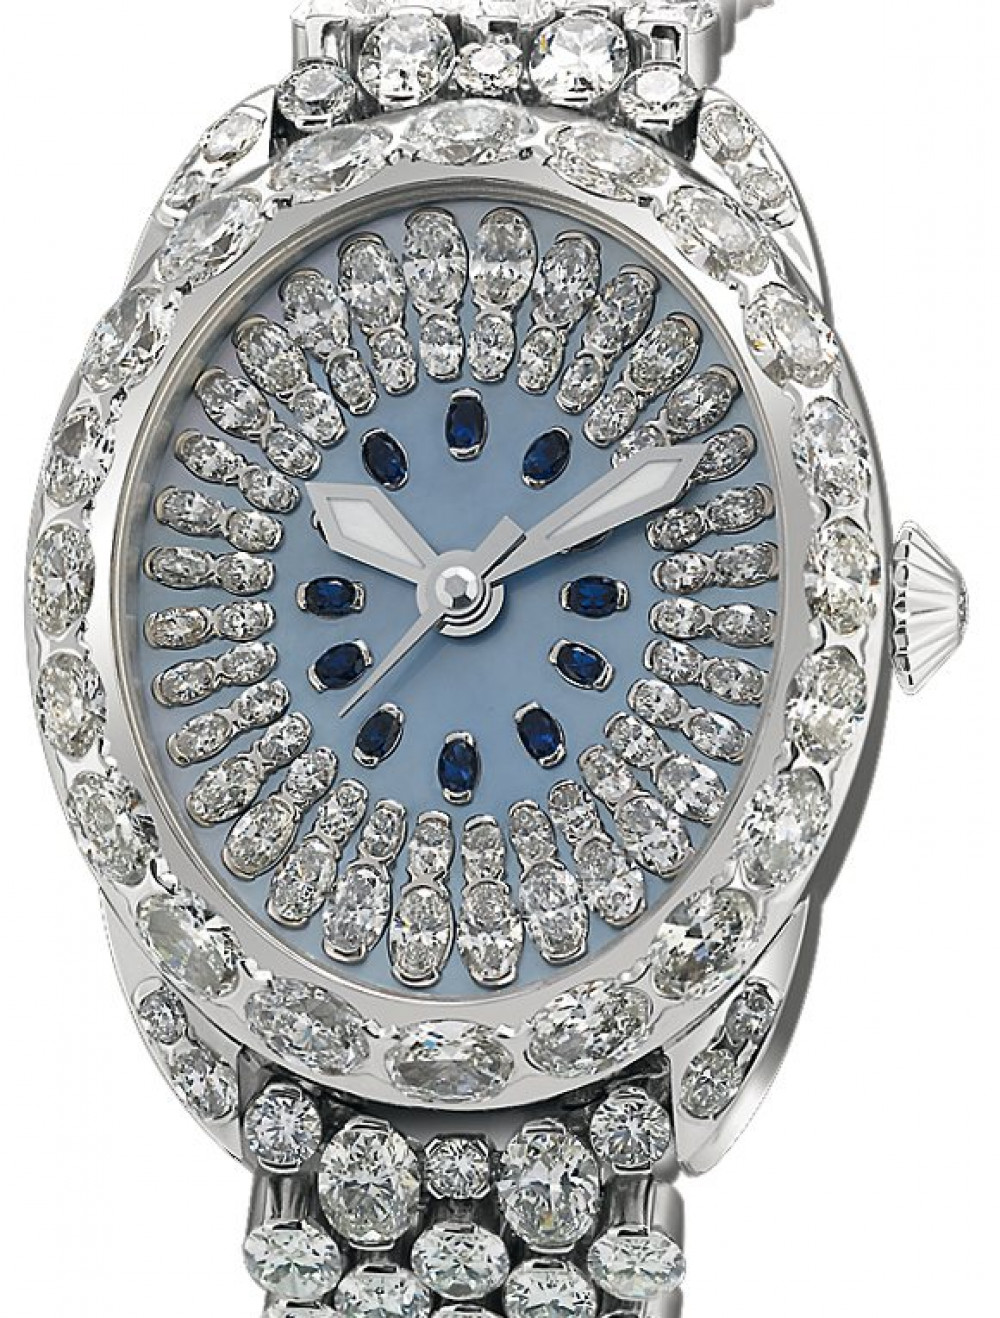 Zegarek firmy Backes & Strauss, model The Royal Regent